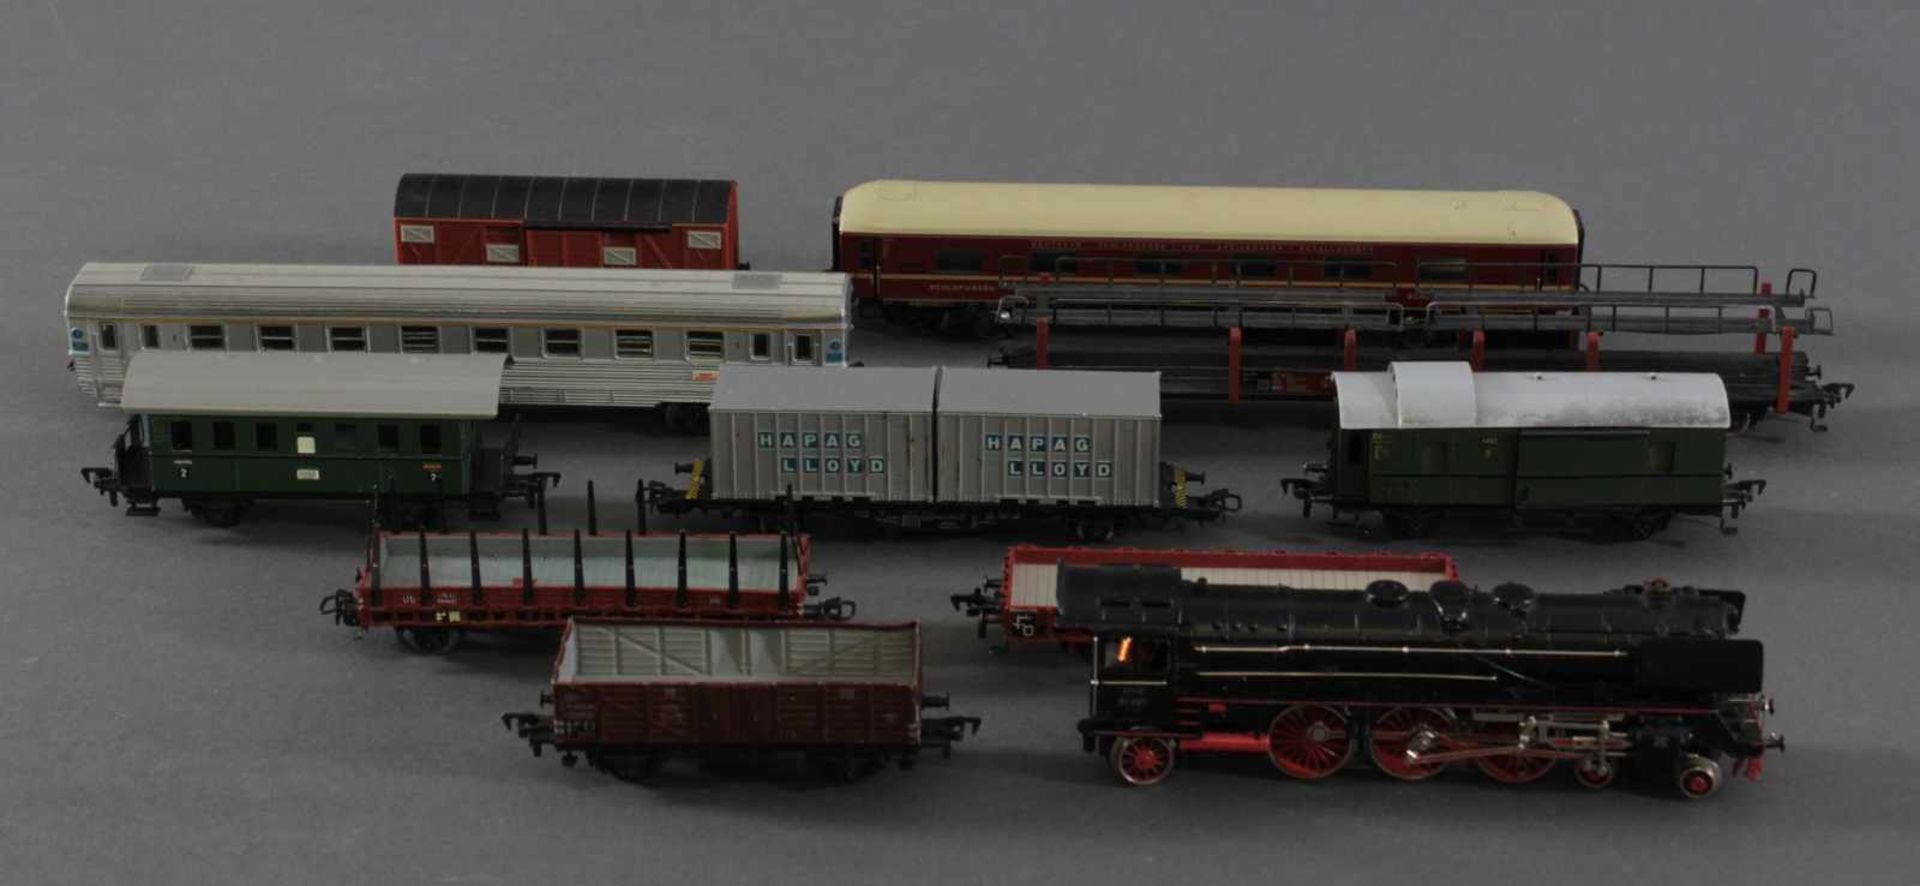 Märklin Dampflok 3048 BR 01 097 mit 10 Güterwaggons aus Kunststoff und Blech, Spur H08 Güter, 1